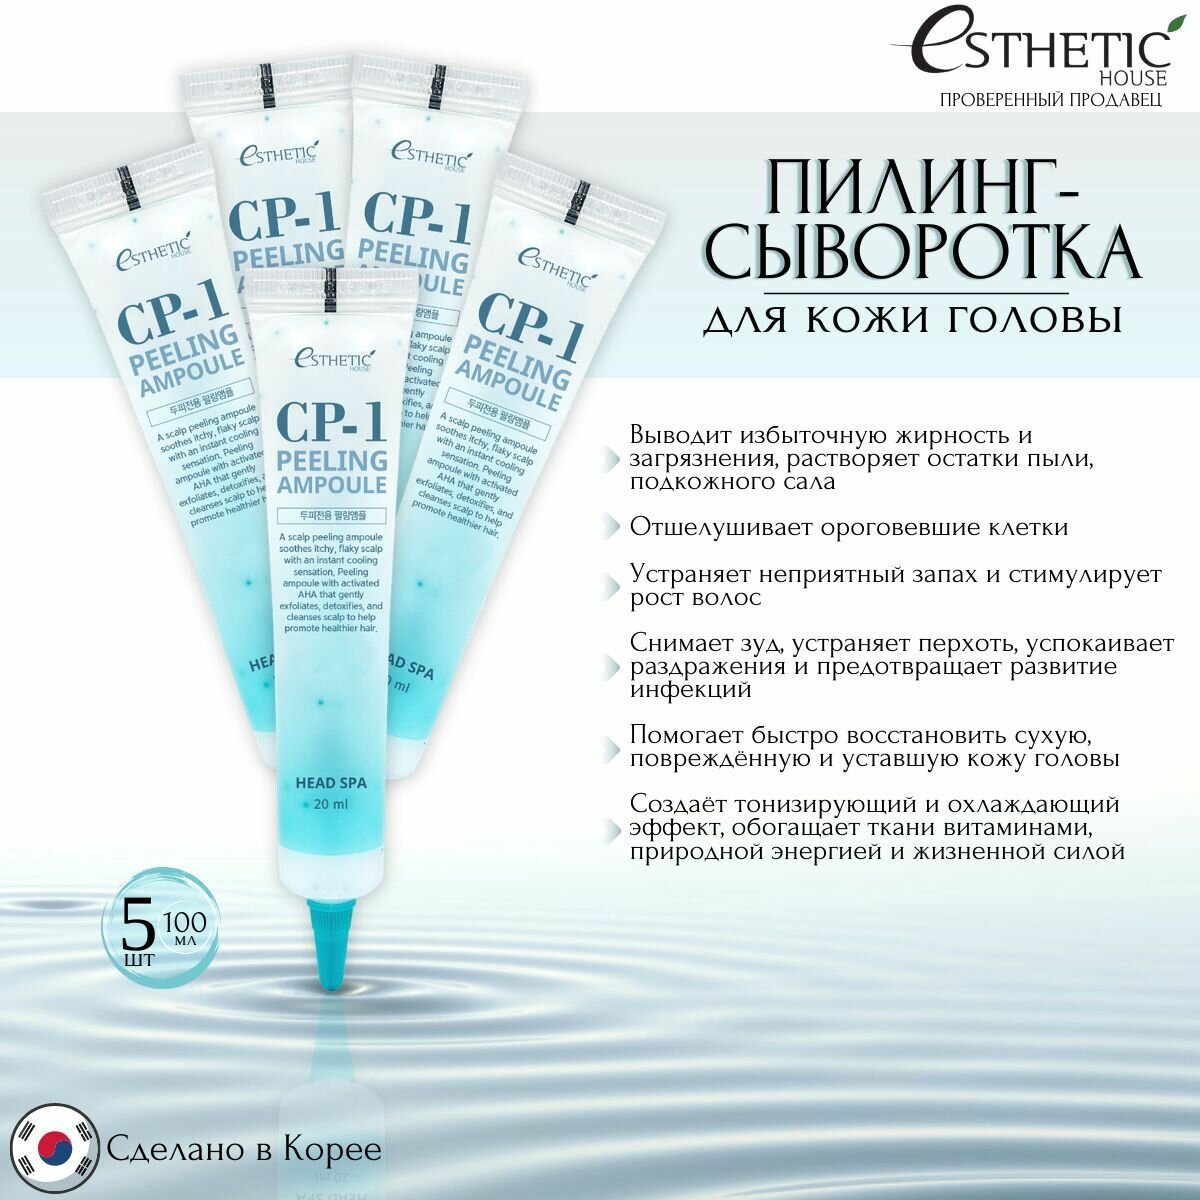 Esthetic House Пилинг-сыворотка для кожи головы с кислотами CP-1 Peeling Ampoule, Корея, 20 мл - 5 шт